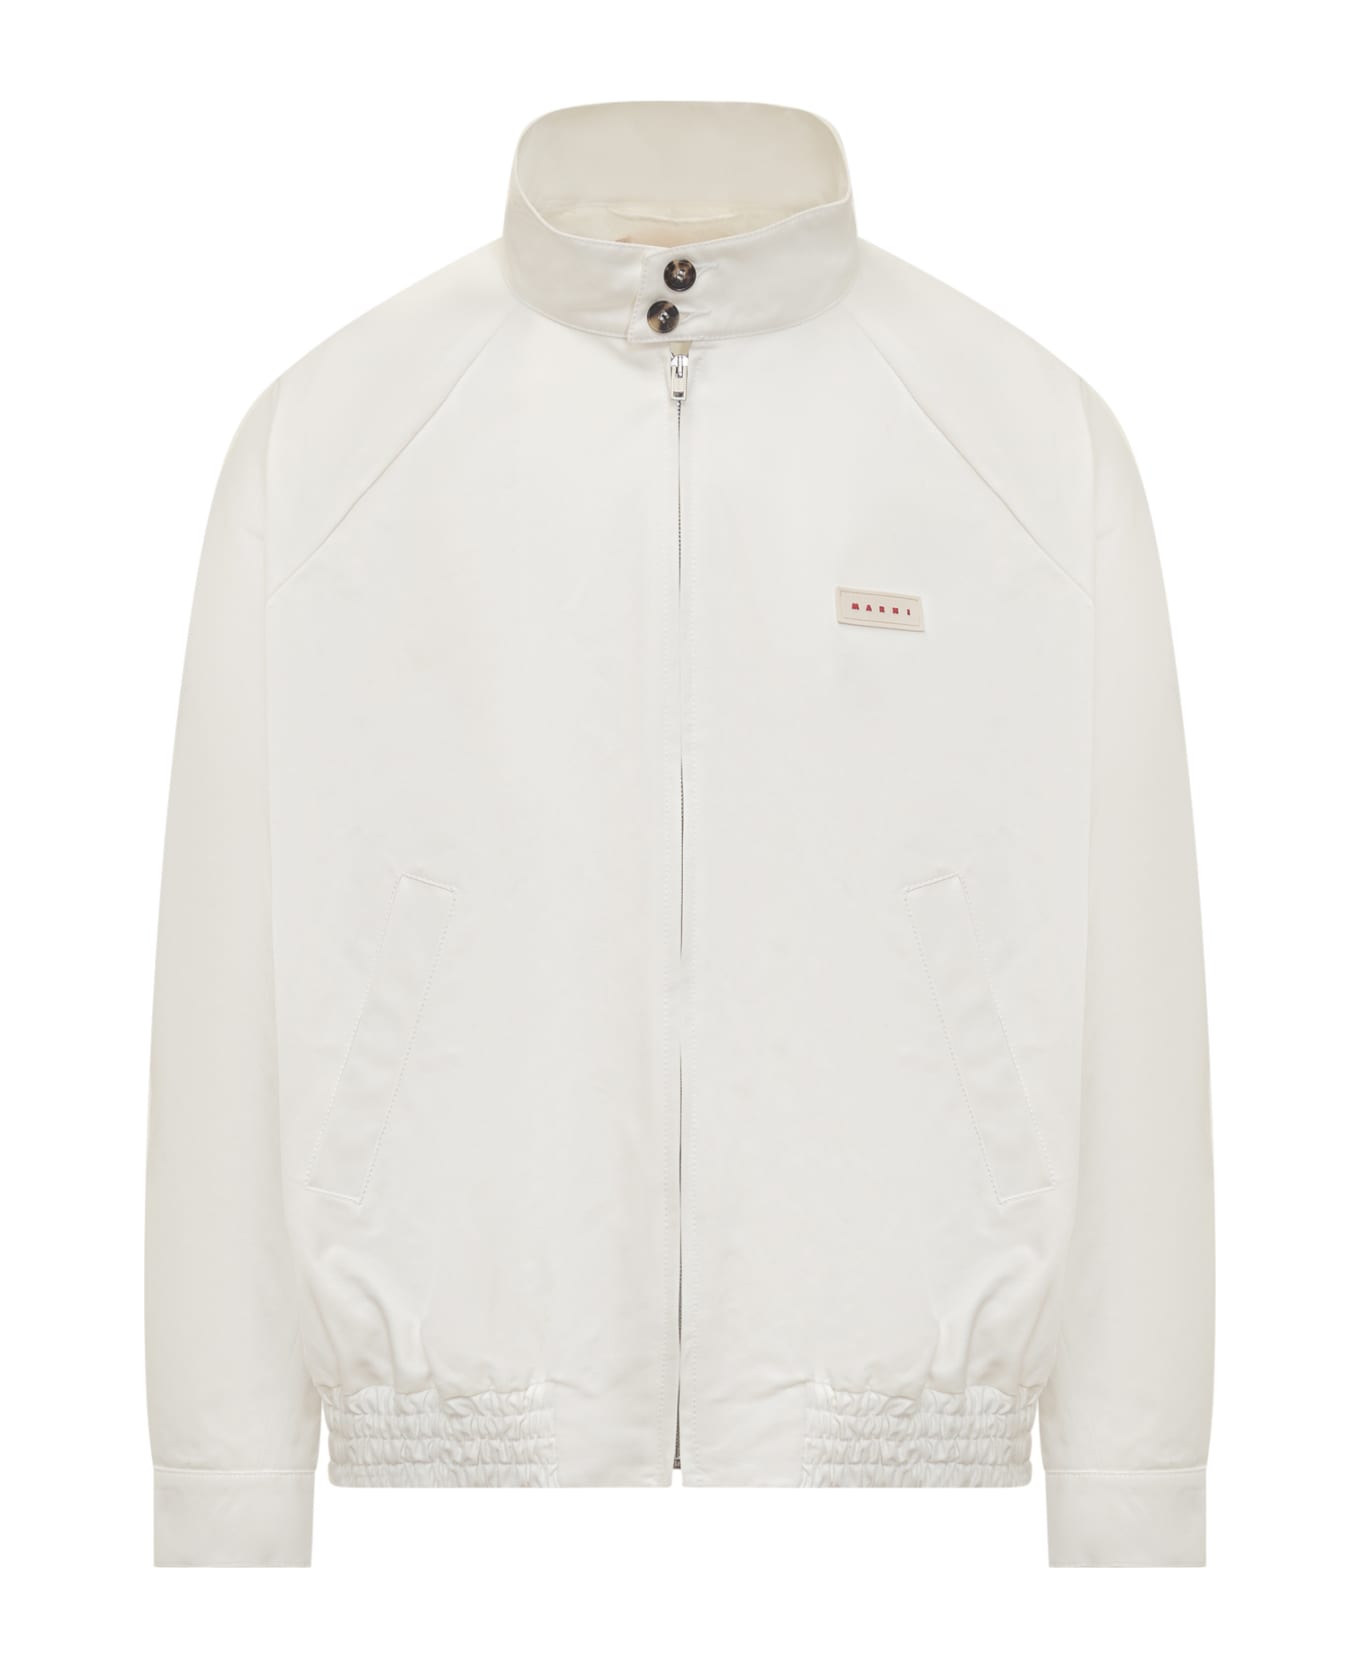 Marni Jacket - LILY WHITE ジャケット